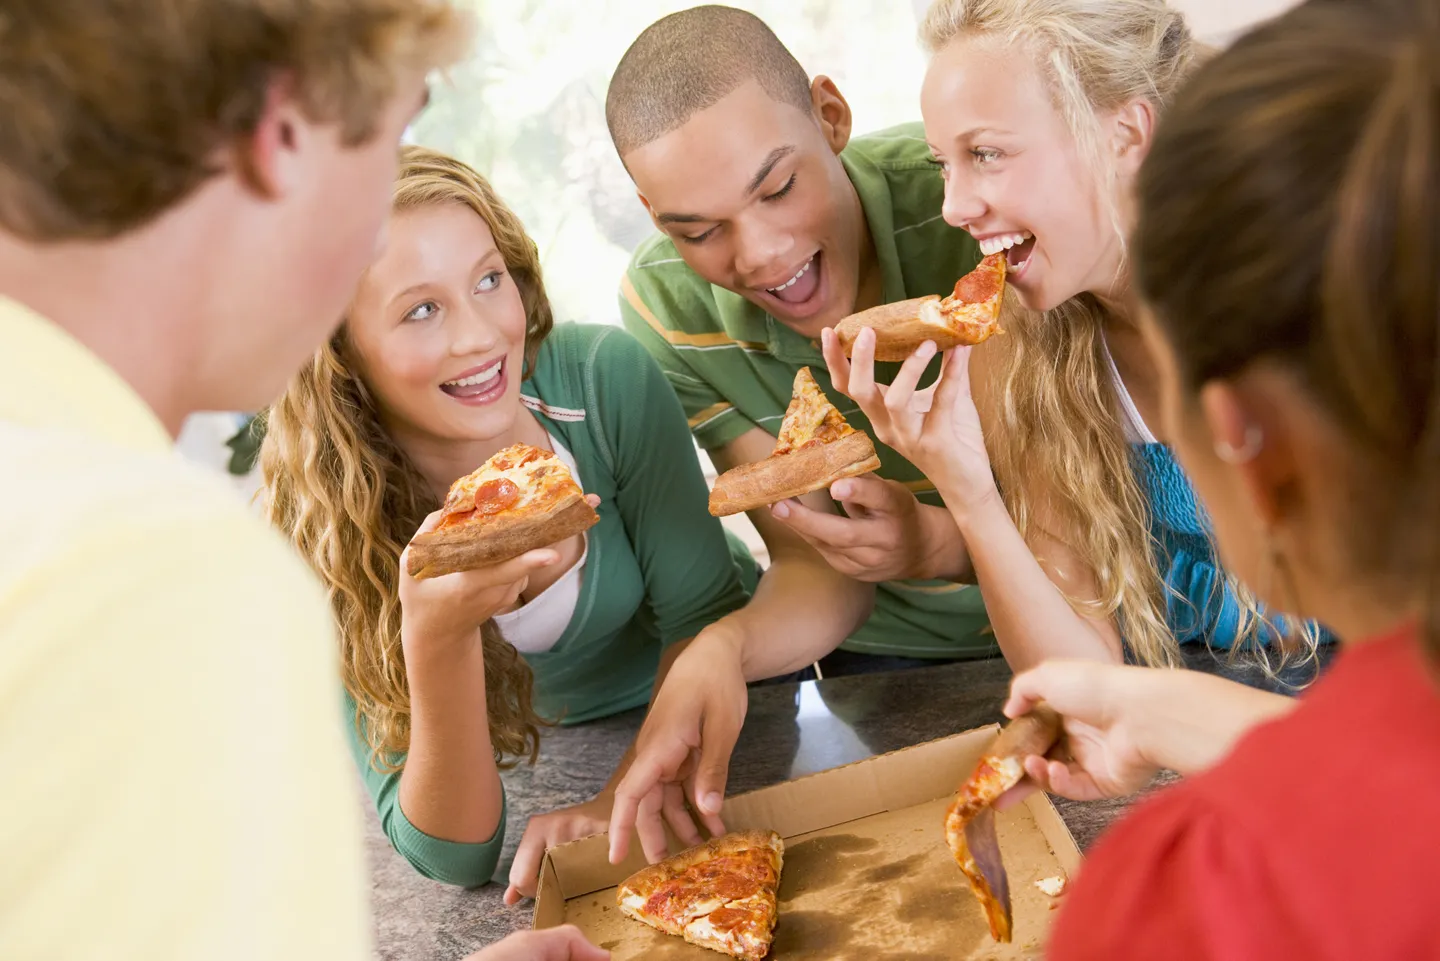 15 Μαΐου | Ημέρα που διοργανώνουμε πάρτυ με πίτσες!